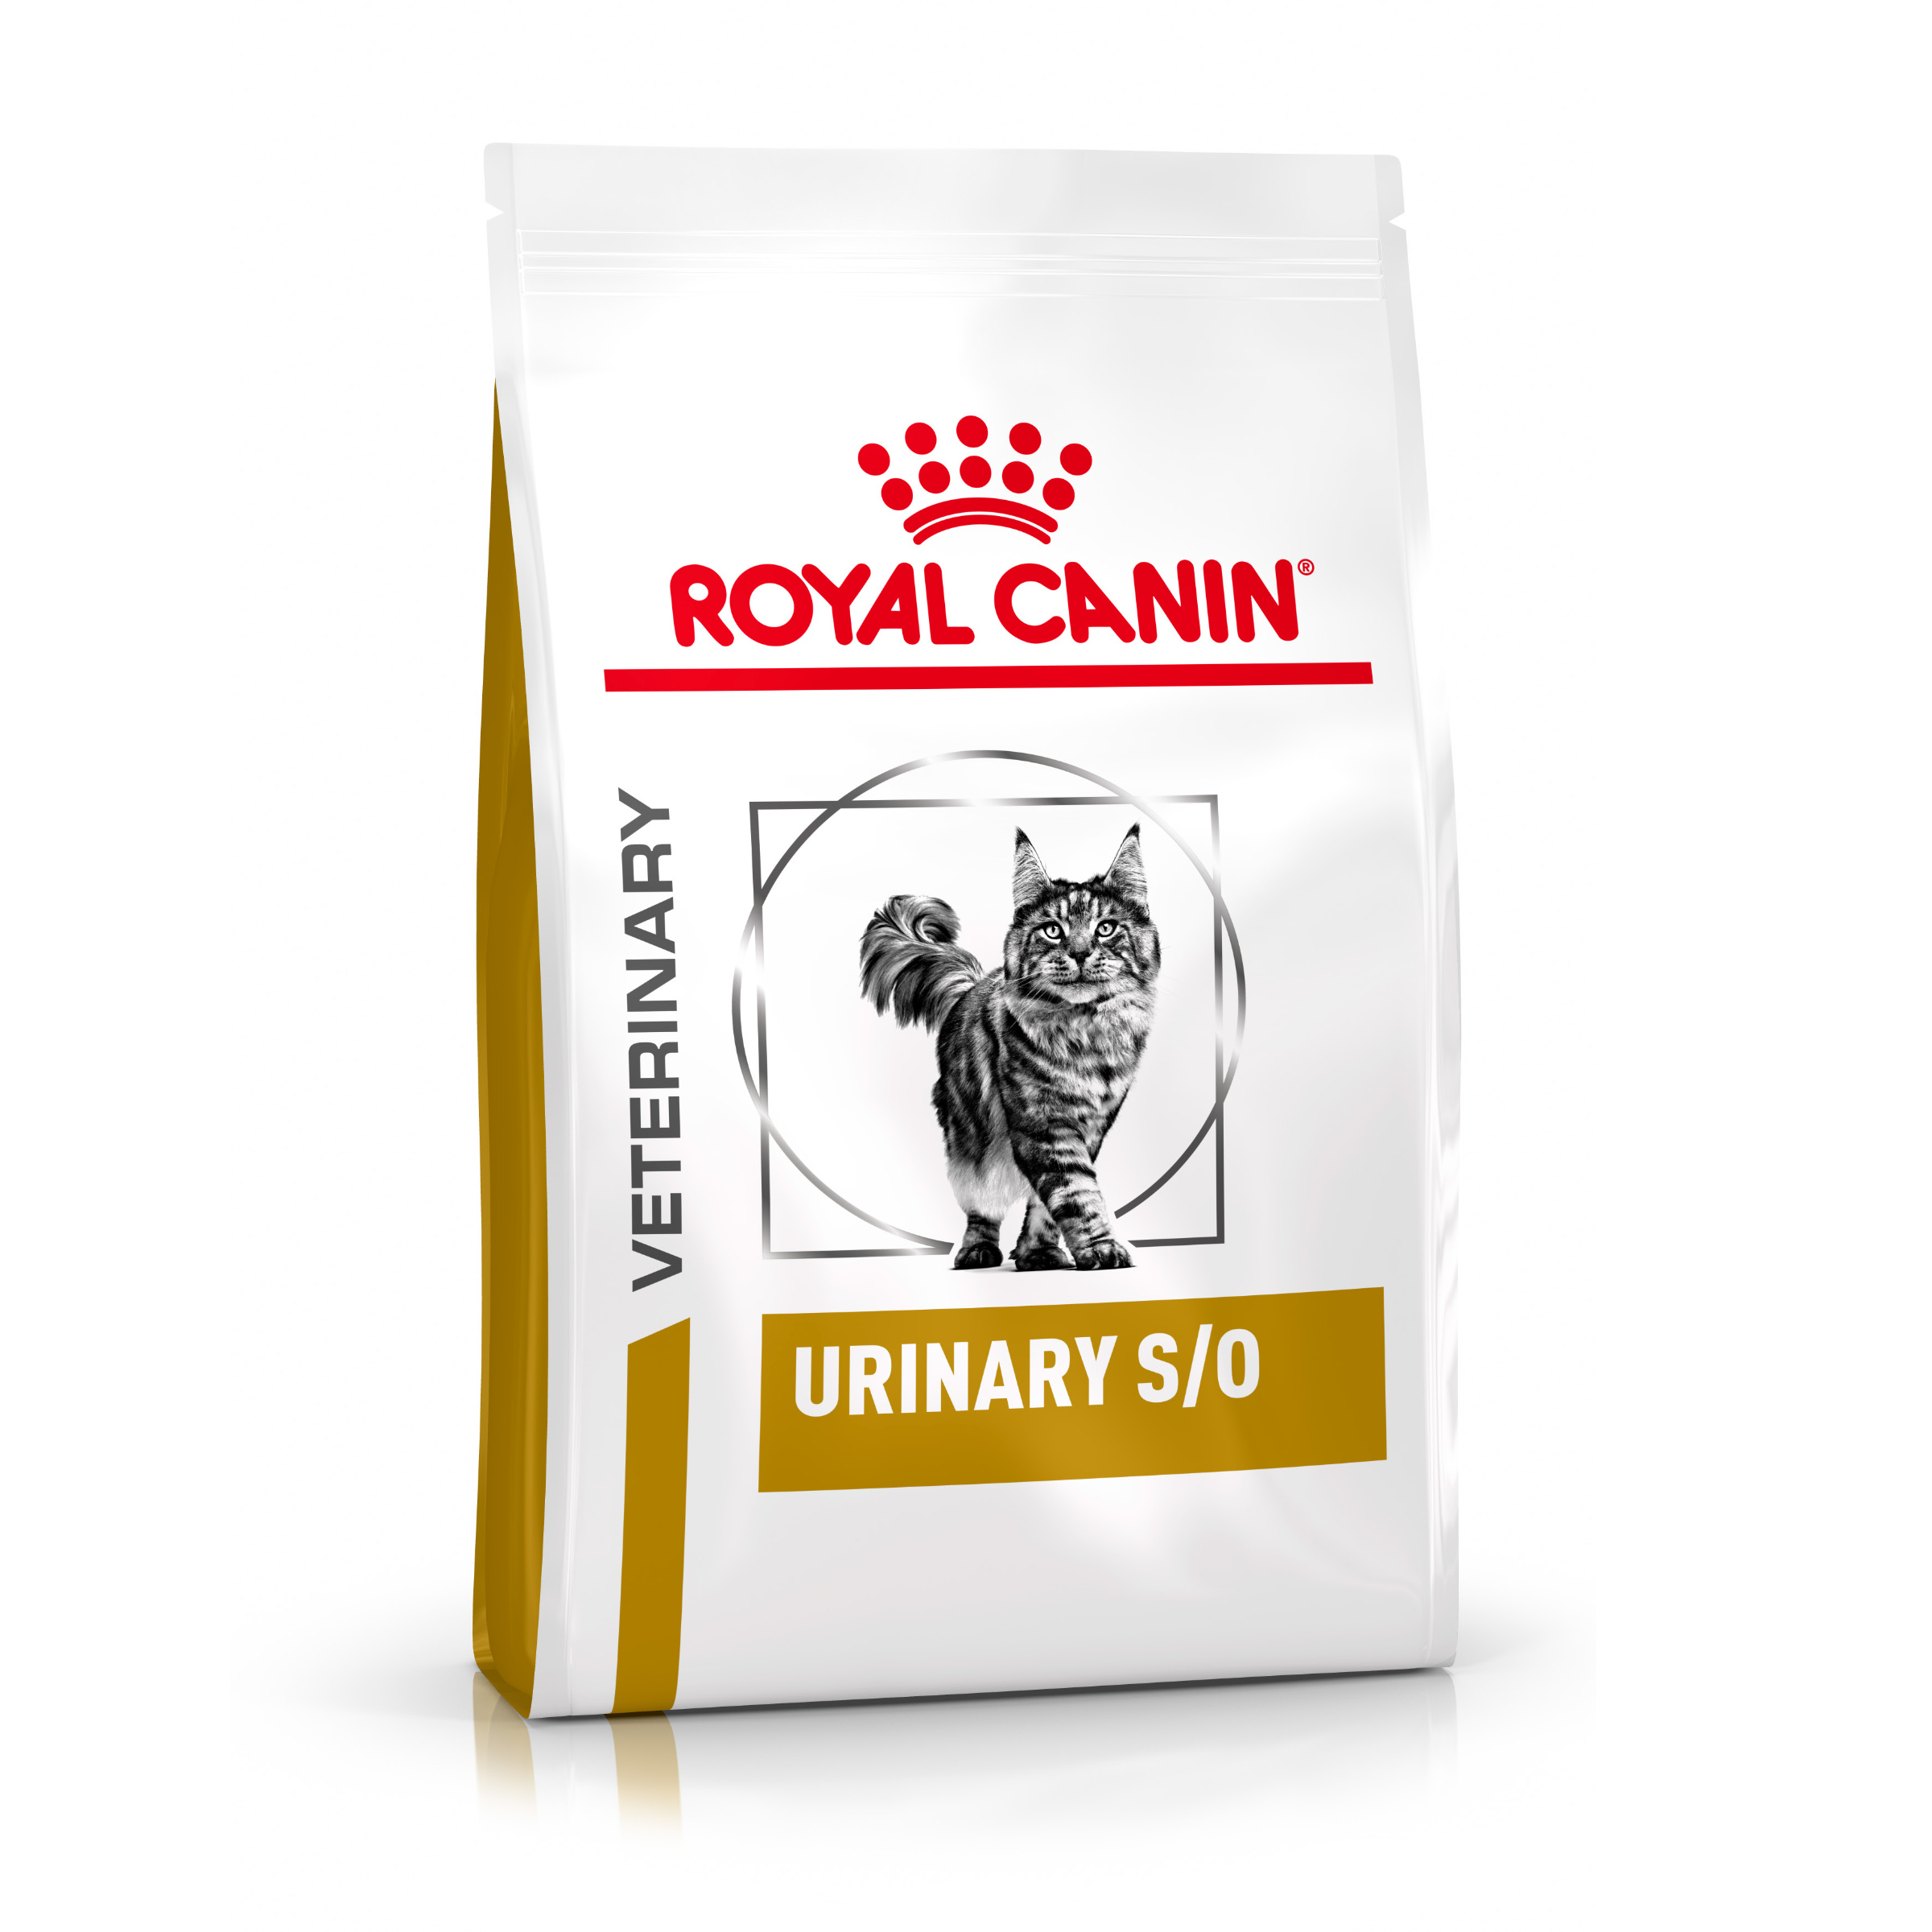 Royal Canin Veterinary Health Nutrition Cat URINARY S/O - 3,5kg